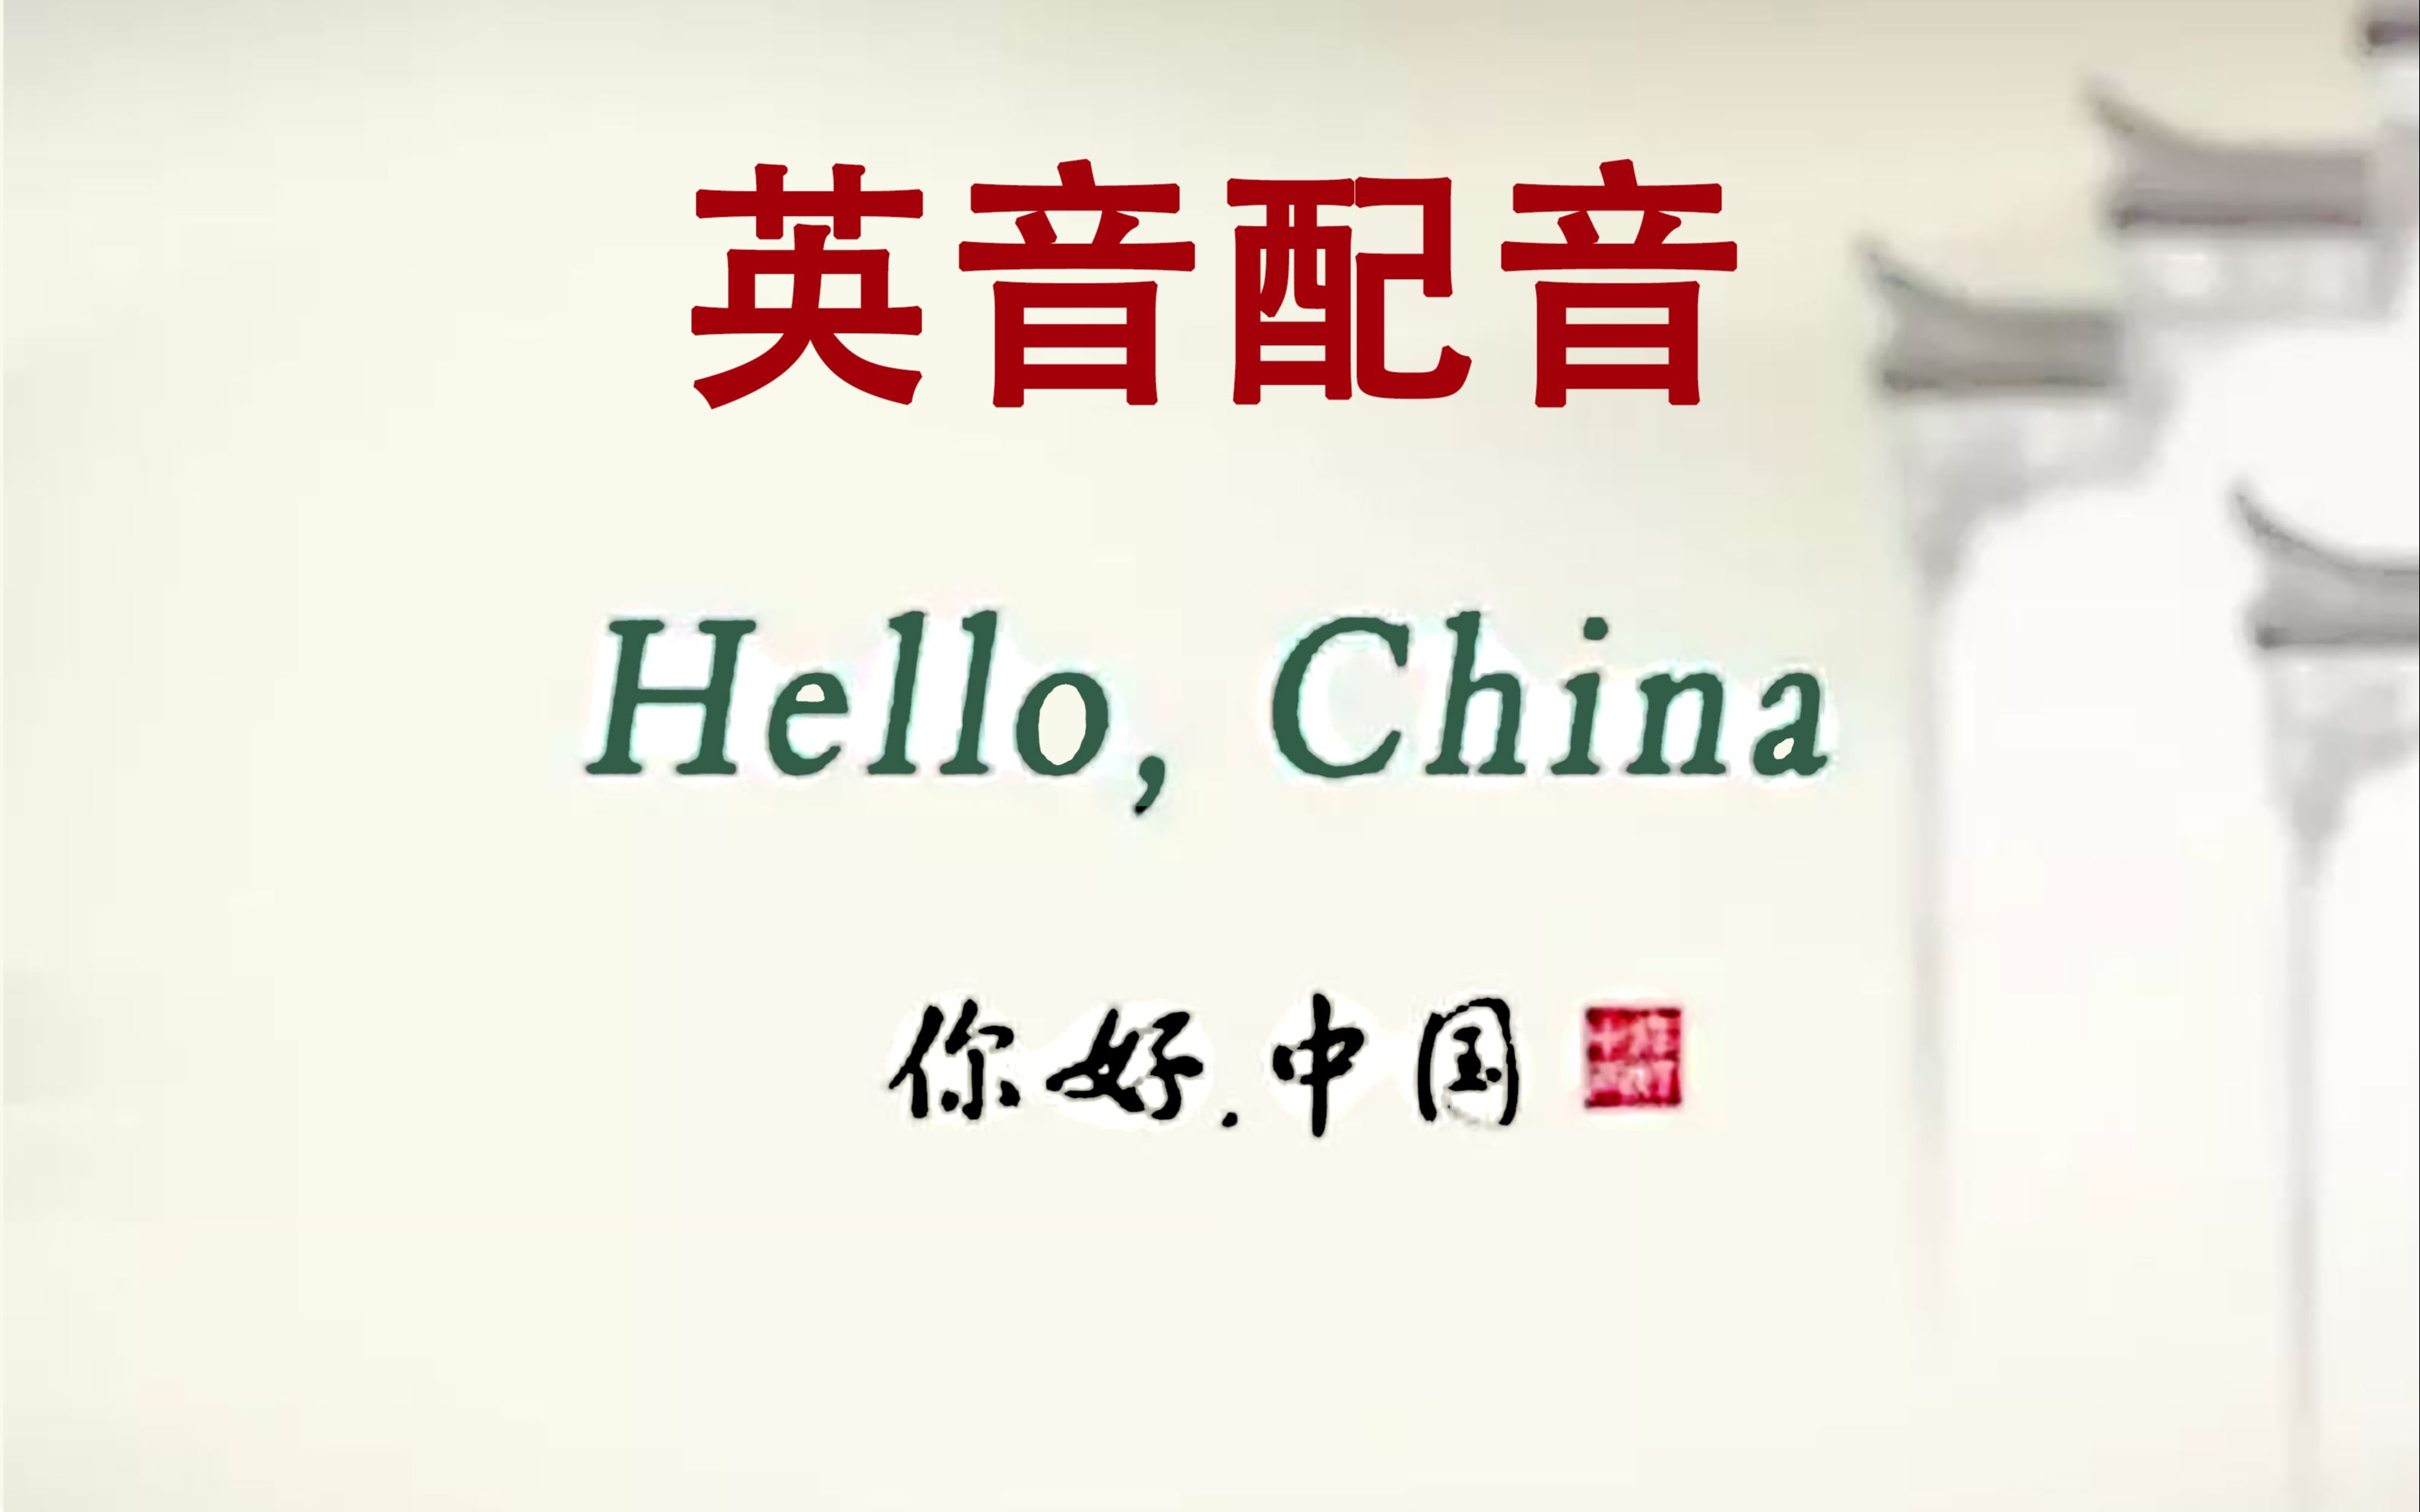 [图]【面条】Hello China《你好中国》英音配音